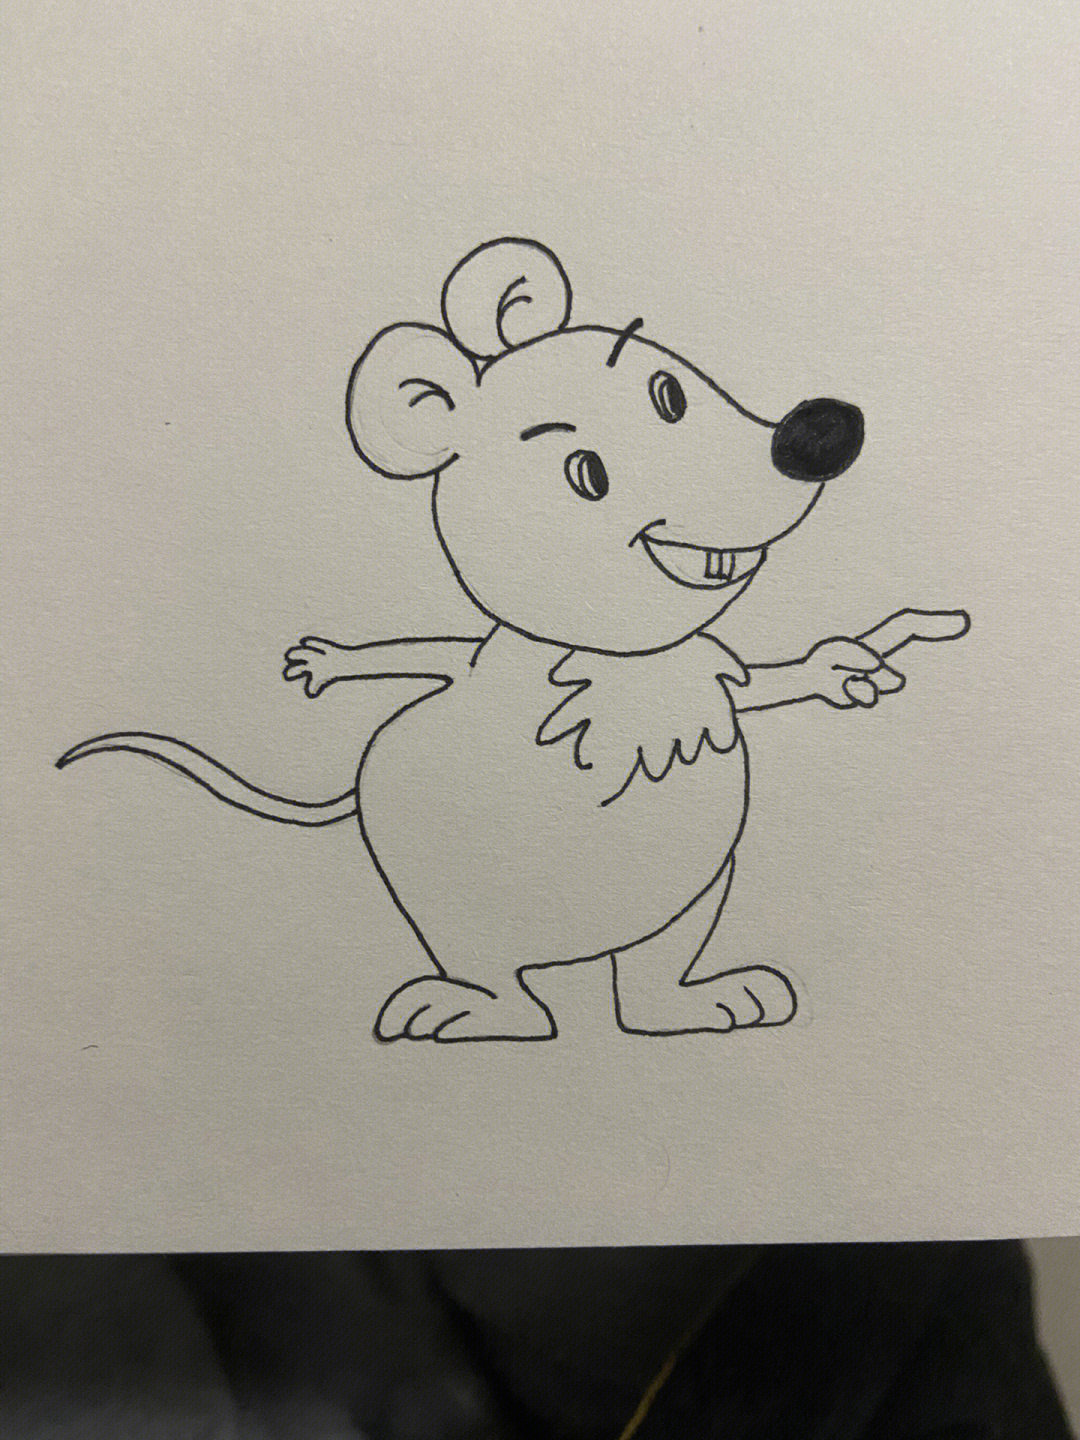 简笔画小老鼠 简单图片